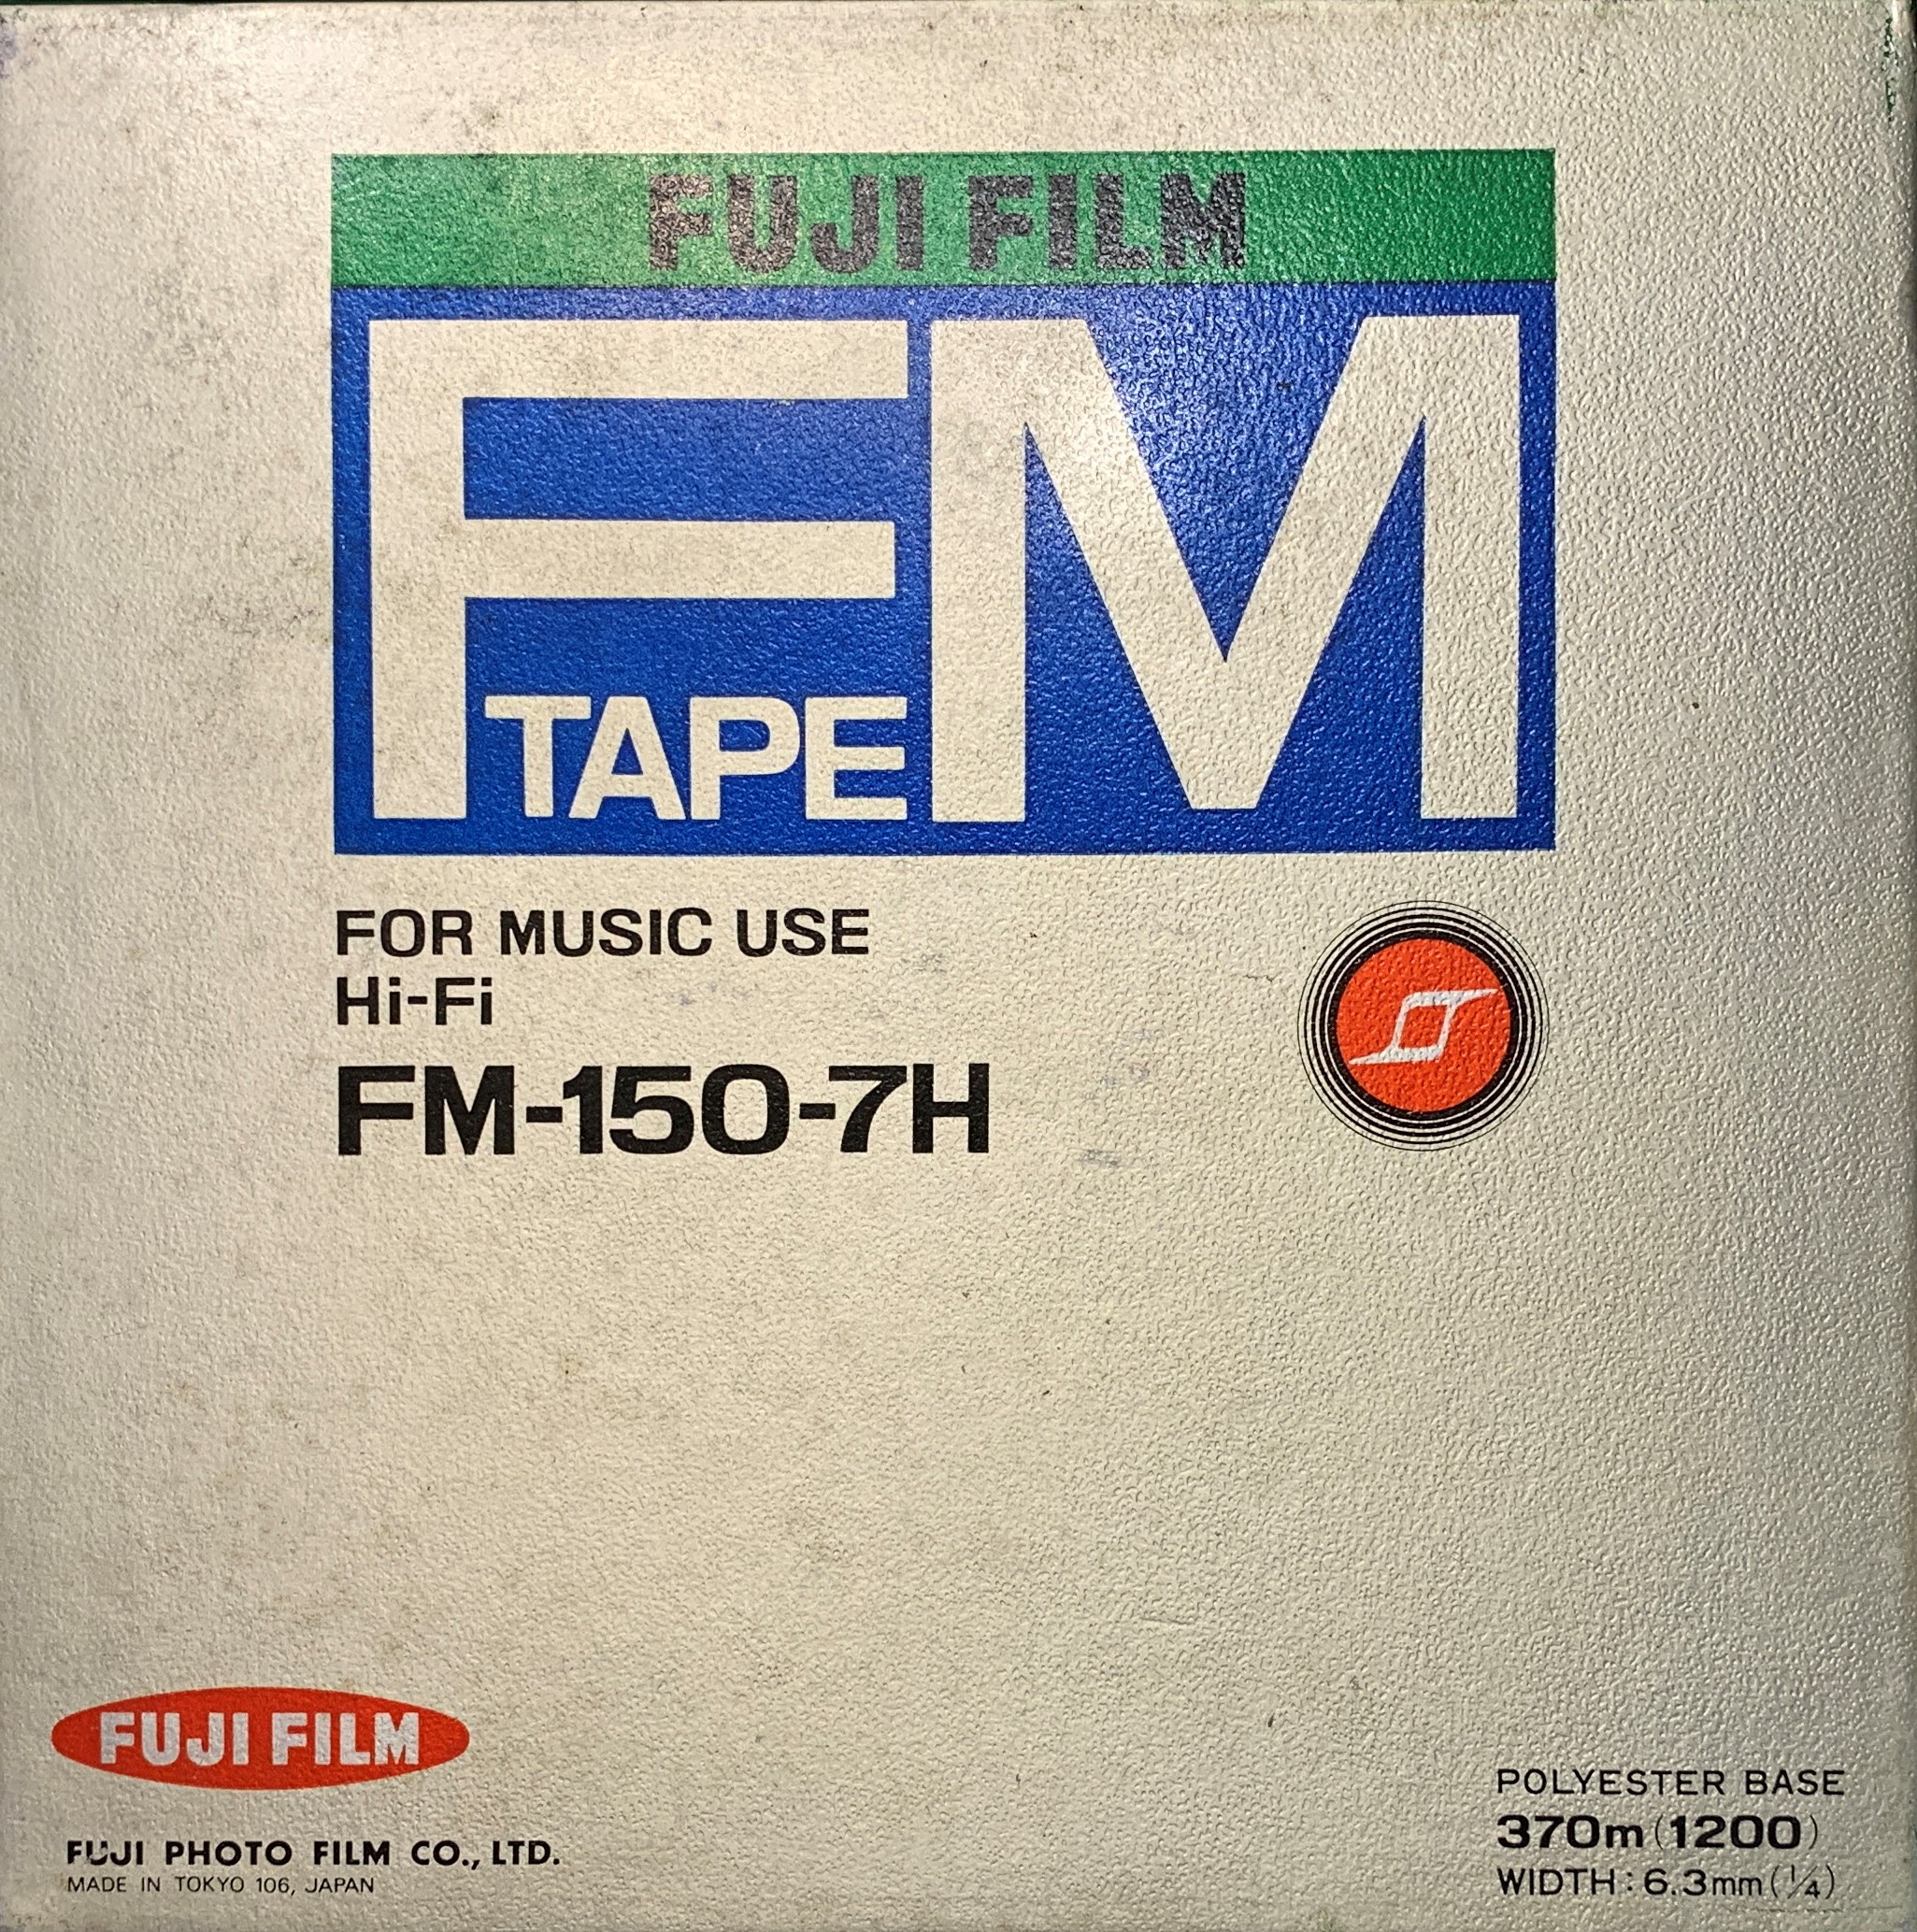 https://reeltoreelwarehouse.com/wp-content/uploads/2021/09/Fuji-FM-7in-1200ft-Reel-Tape-Box.jpg